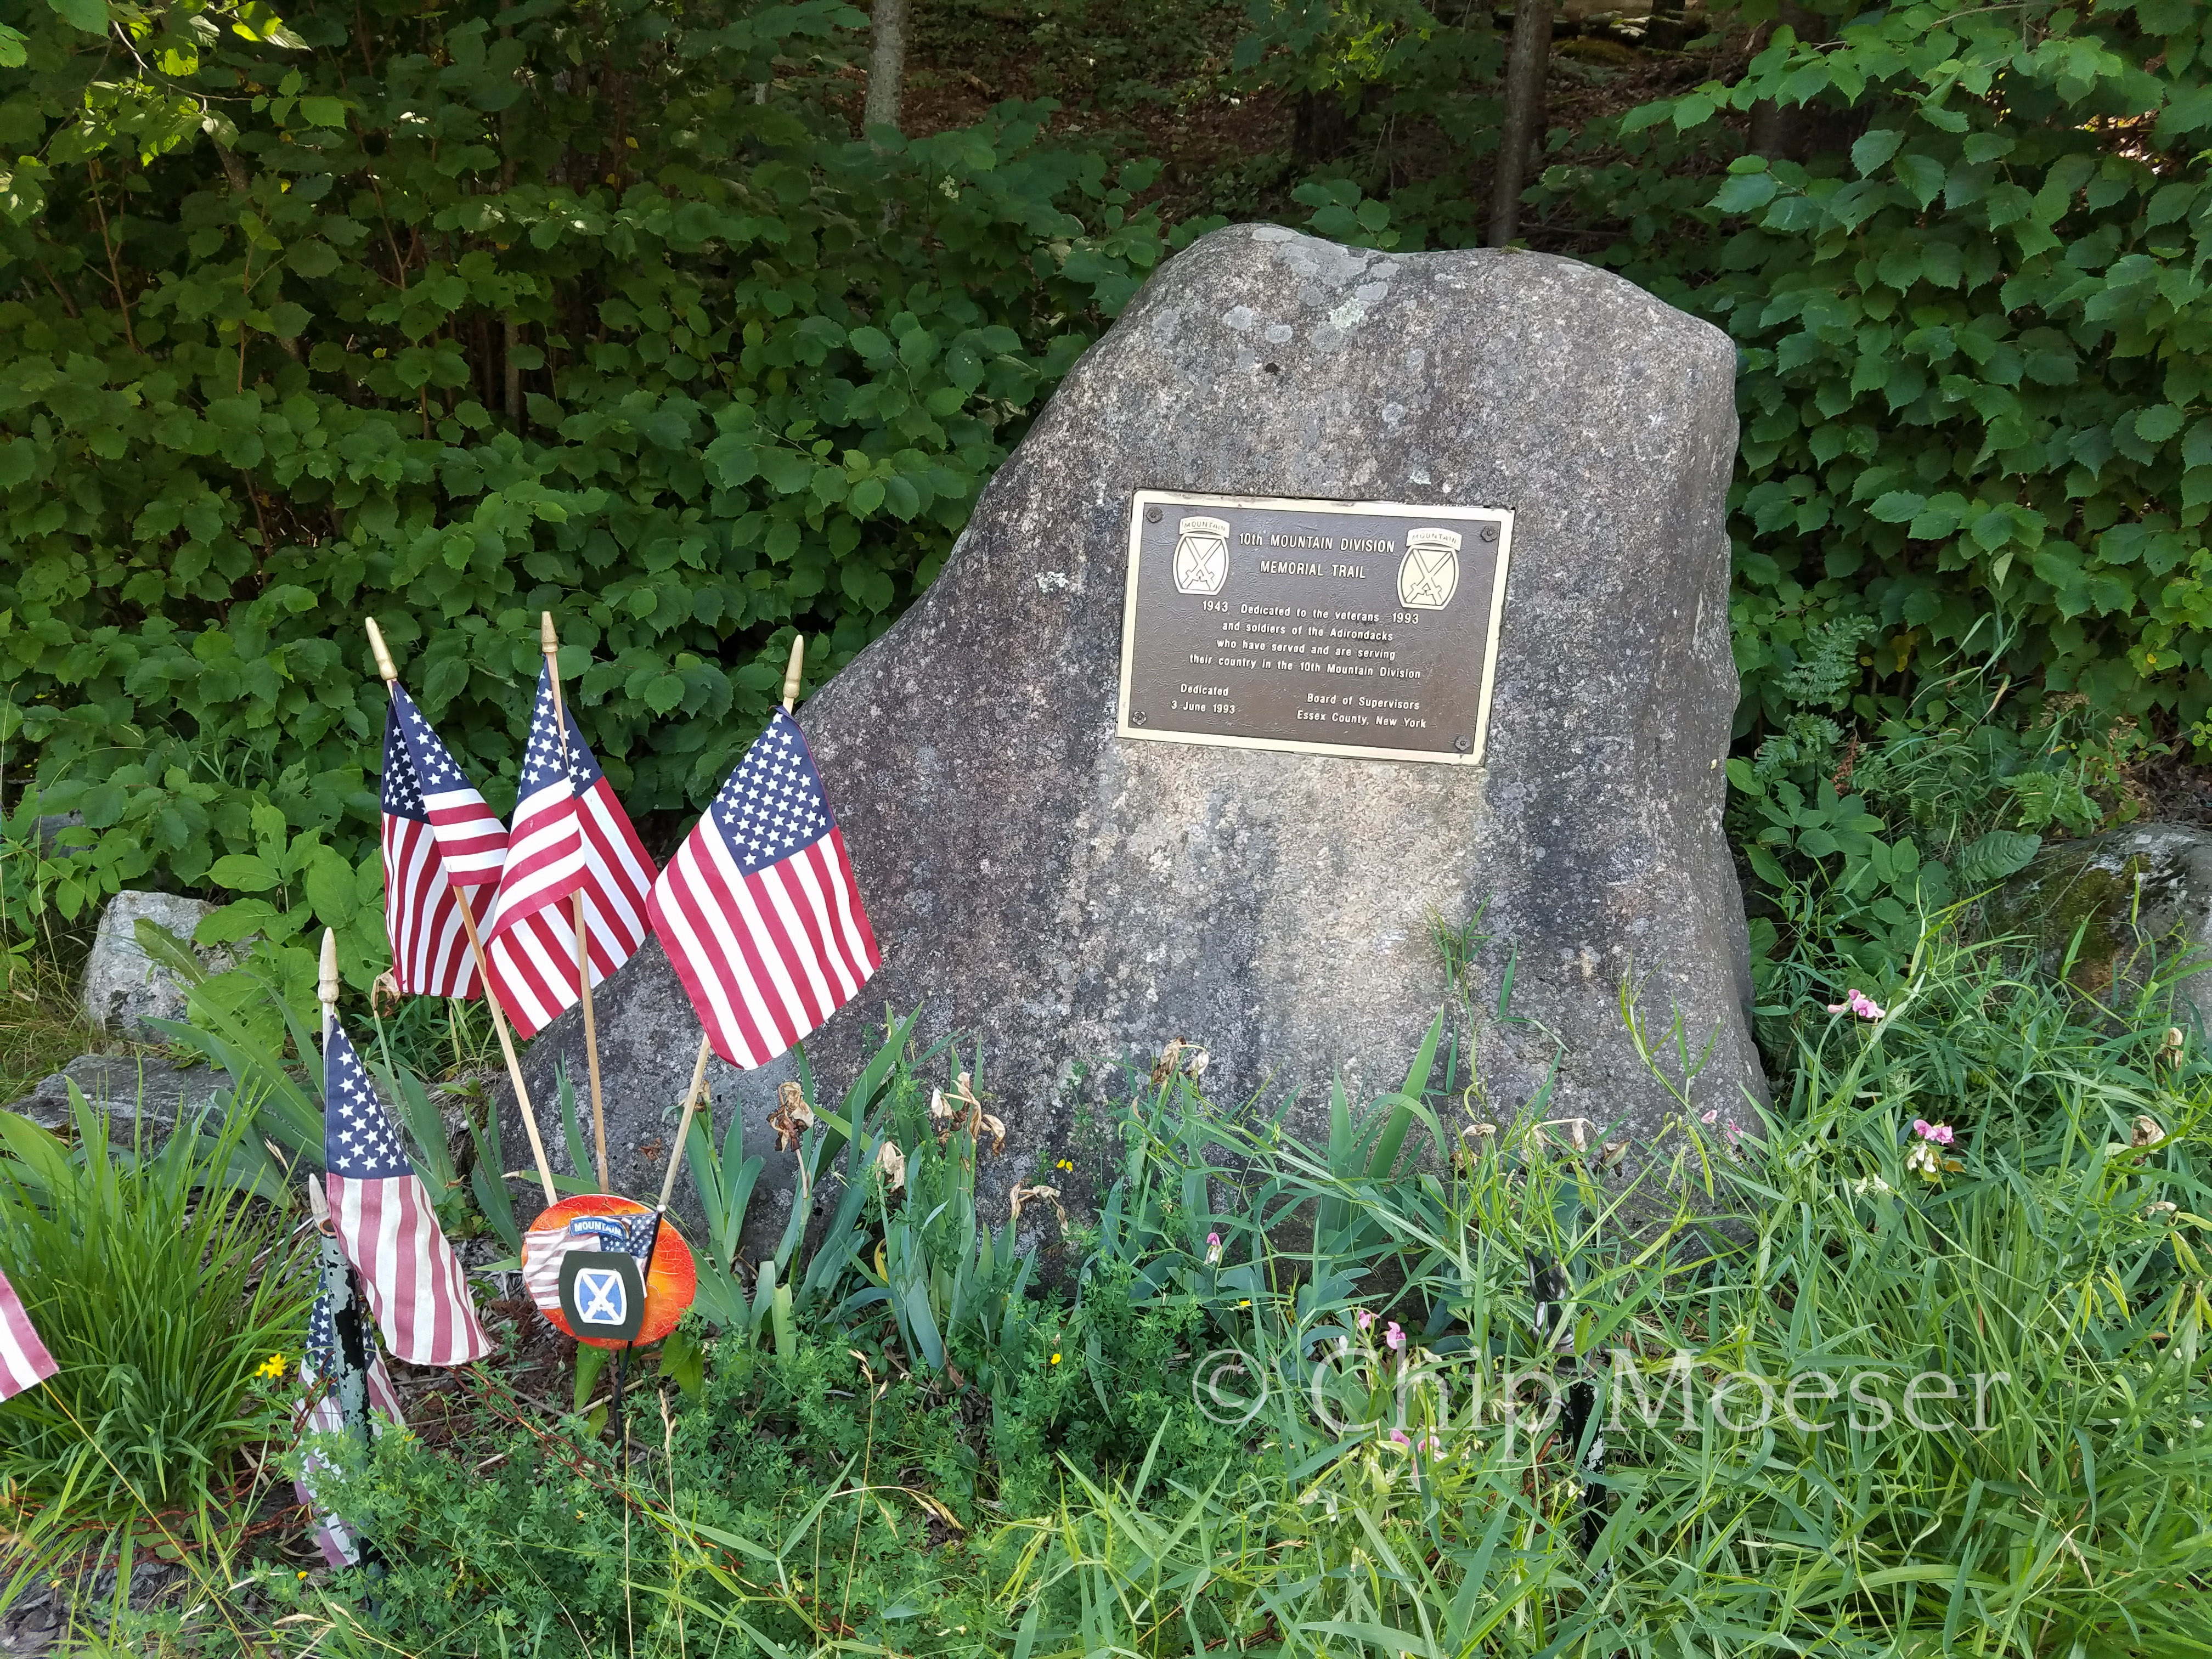 10th Mountain Division Memorial Trail